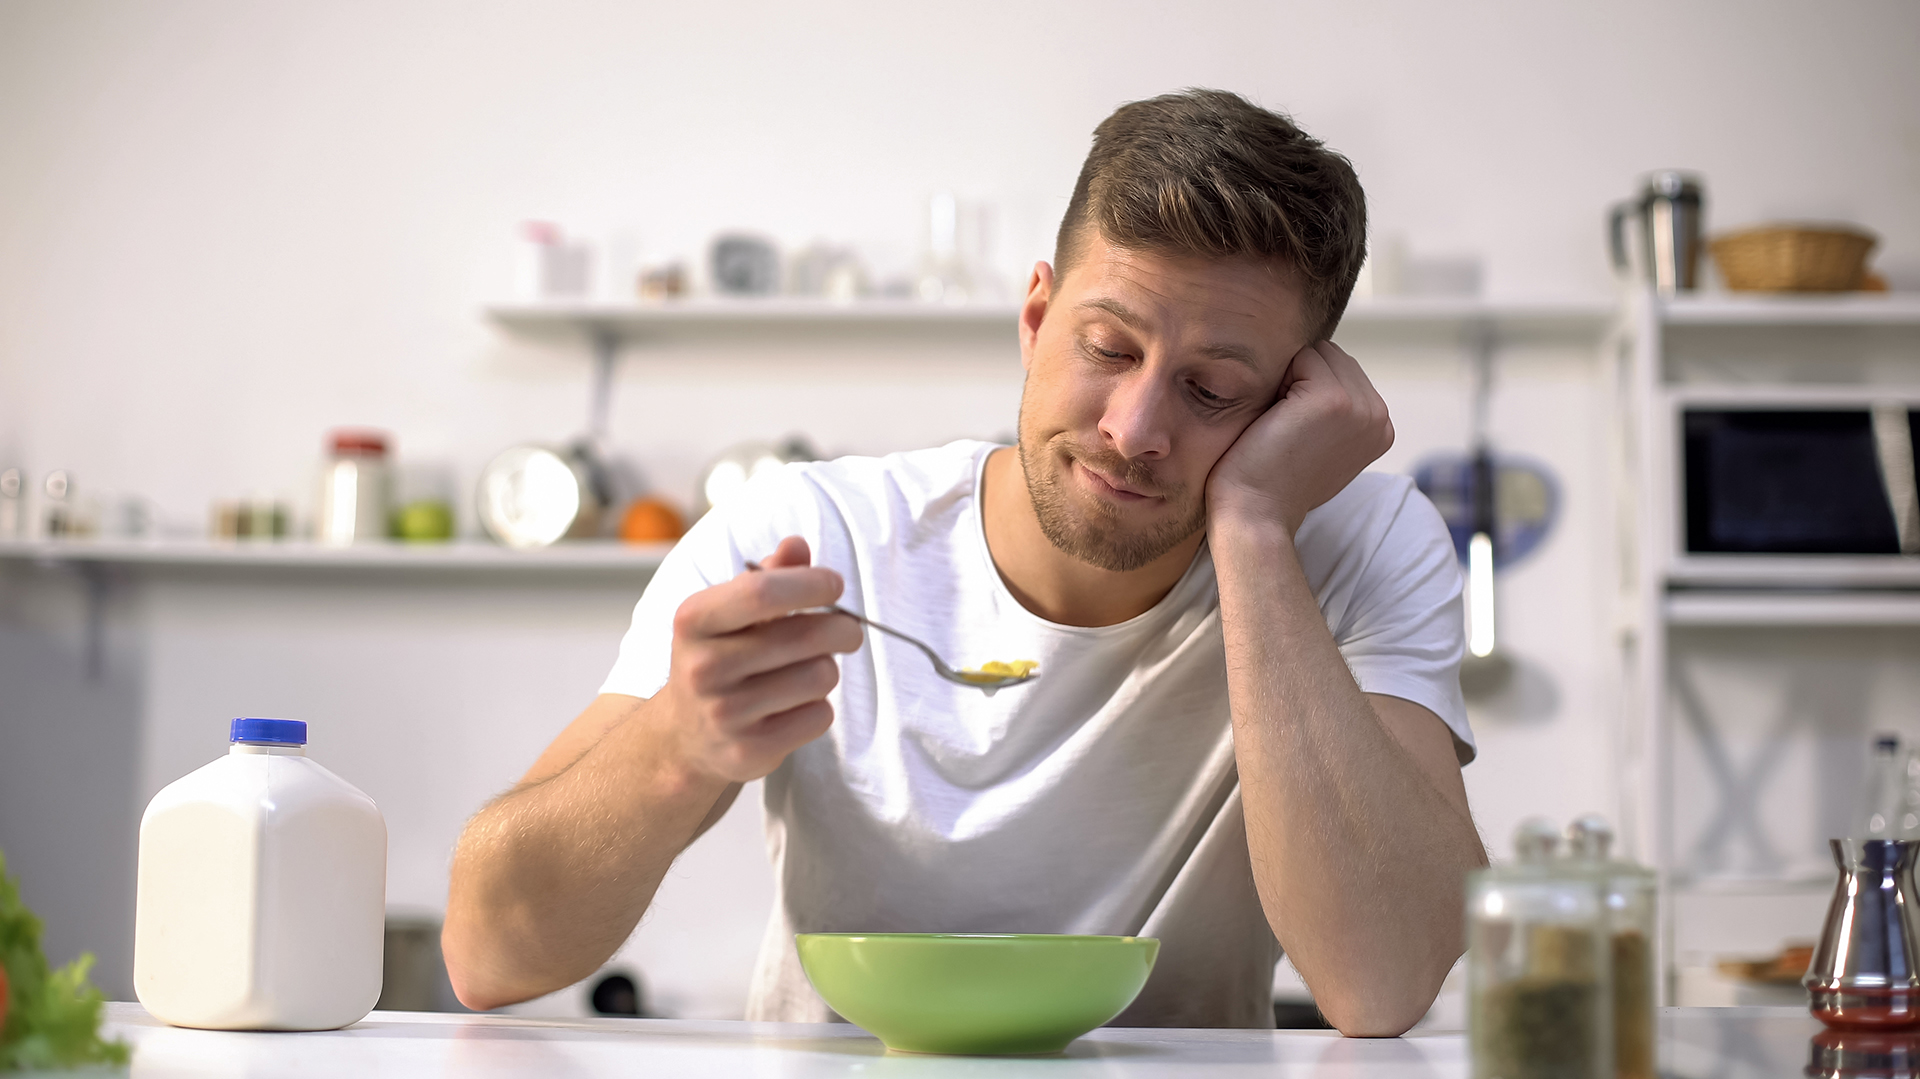 El olfato da el 80% del sabor por lo que los pacientes con DO ven afectada la degustación de la comida y sienten honda preocupación acerca de la persistencia del cuadro (Shutterstock)